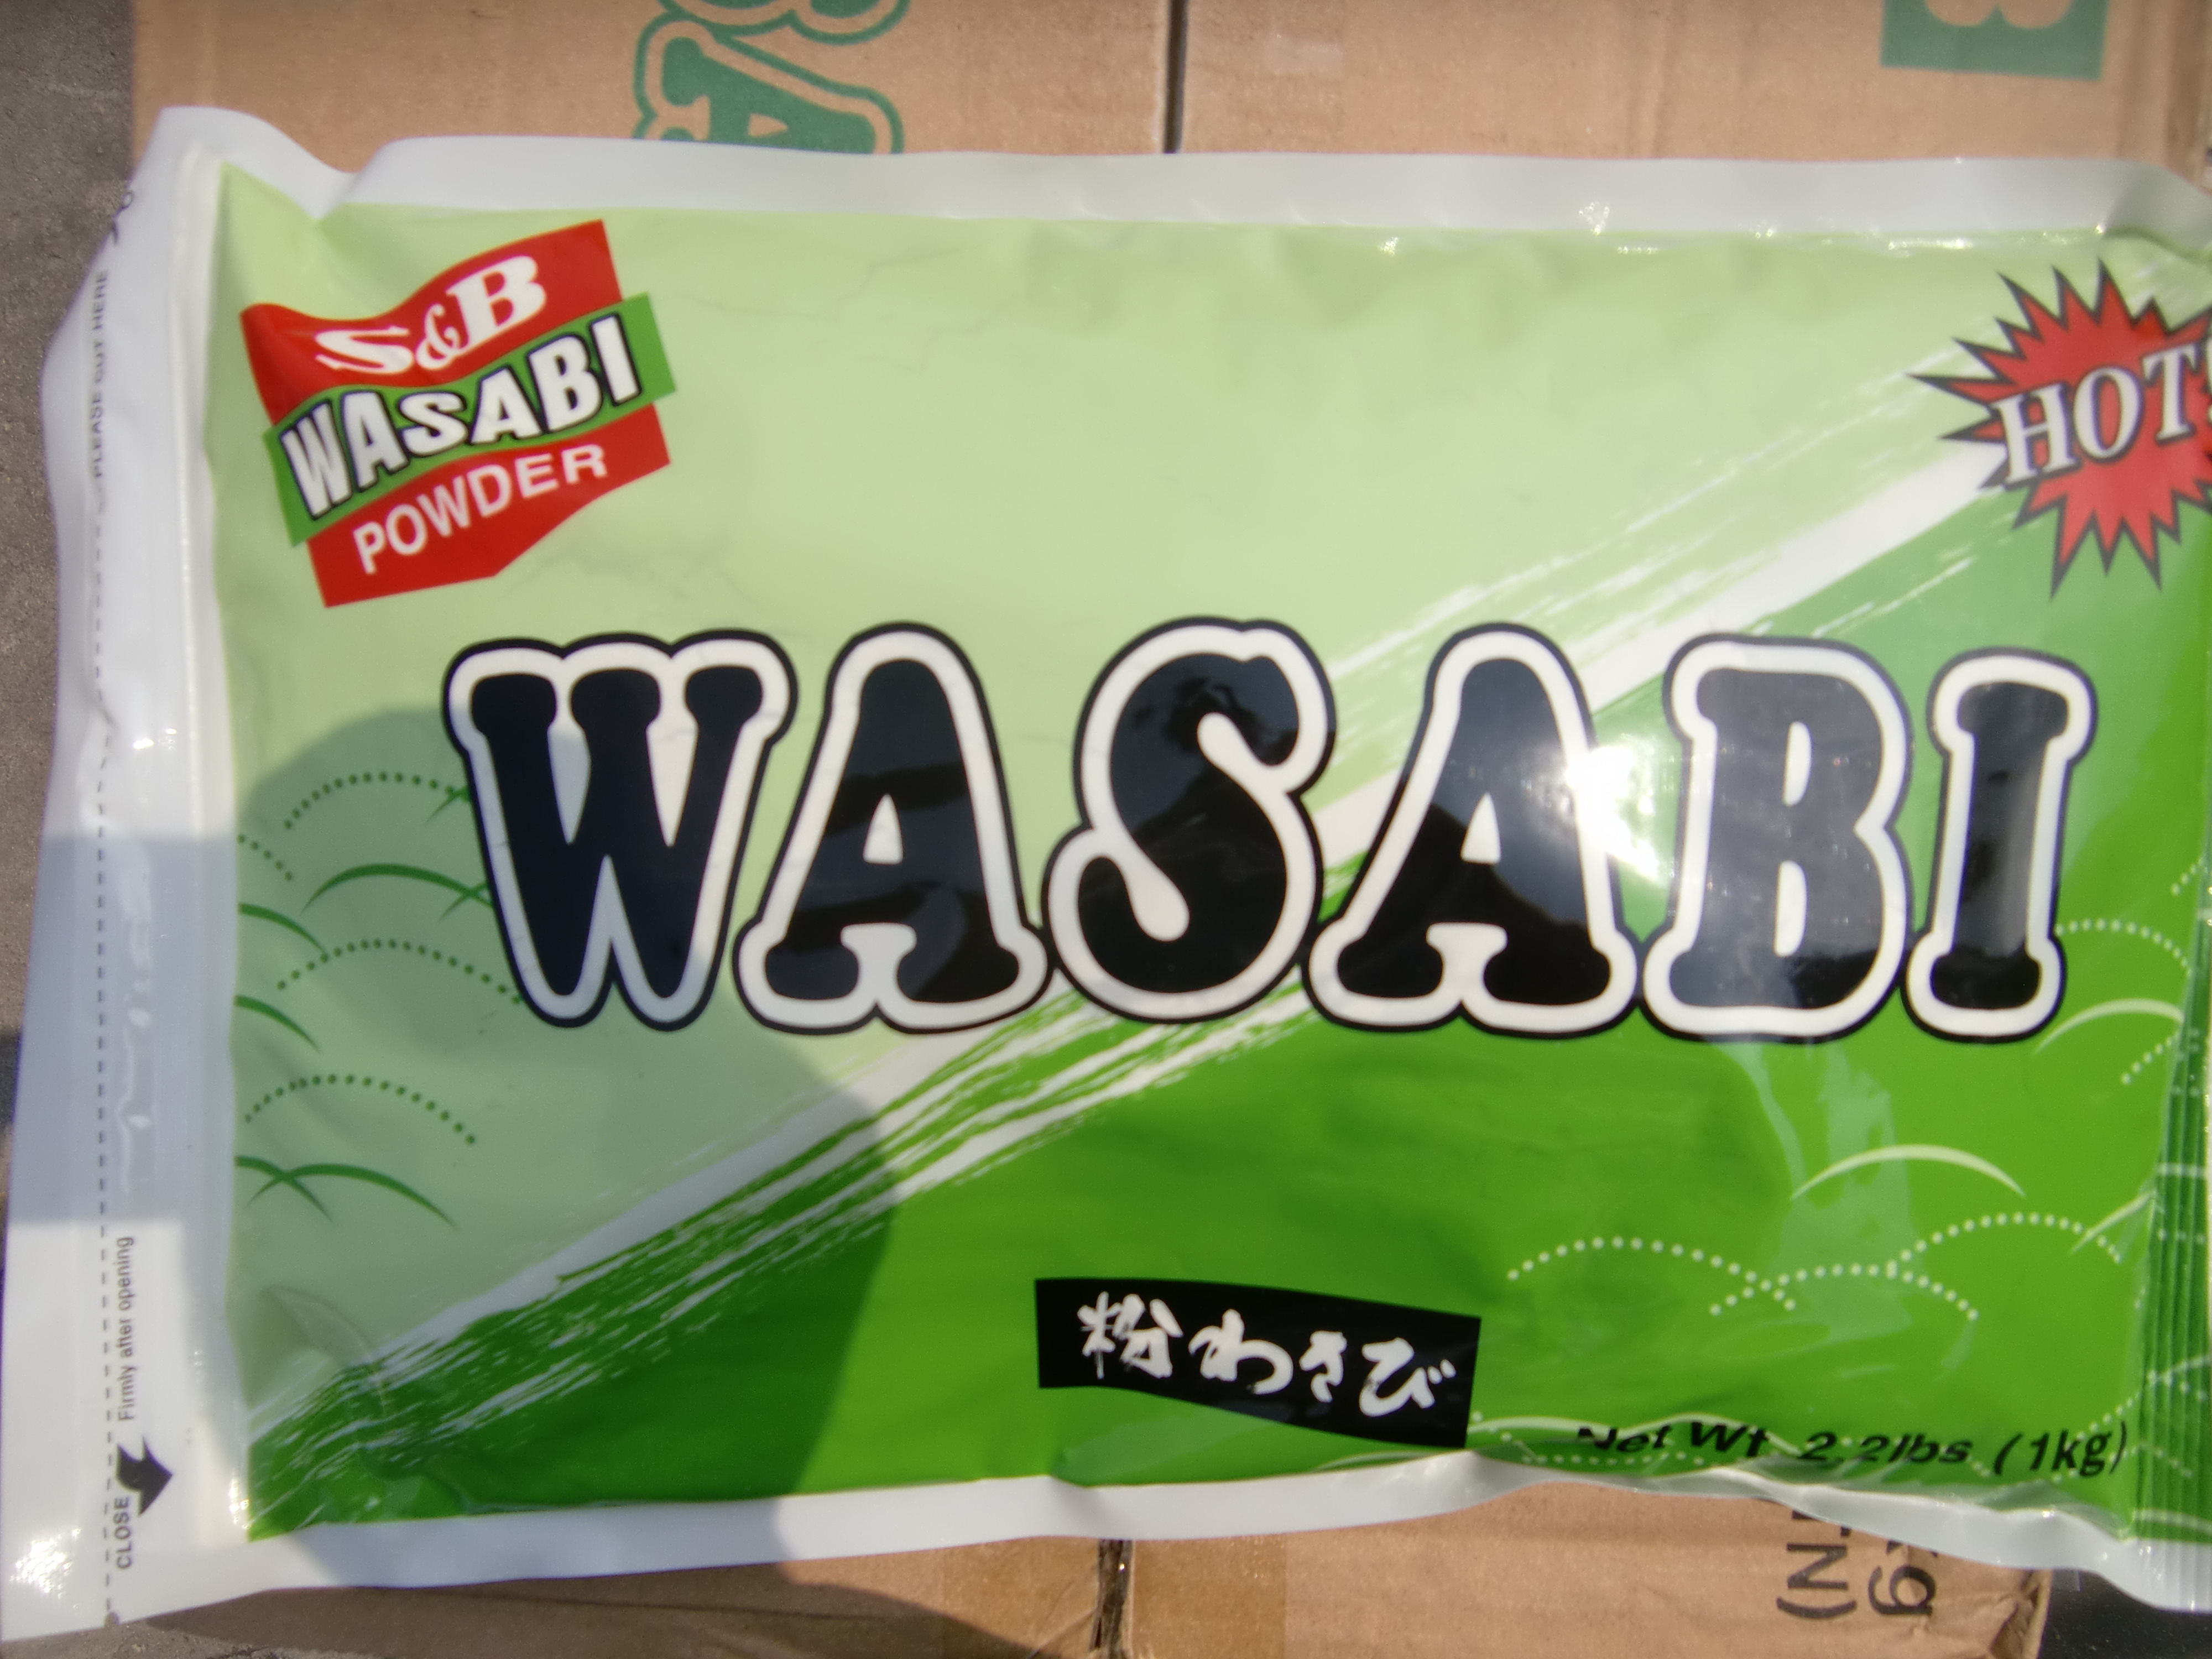 S&B Wasabi  powder